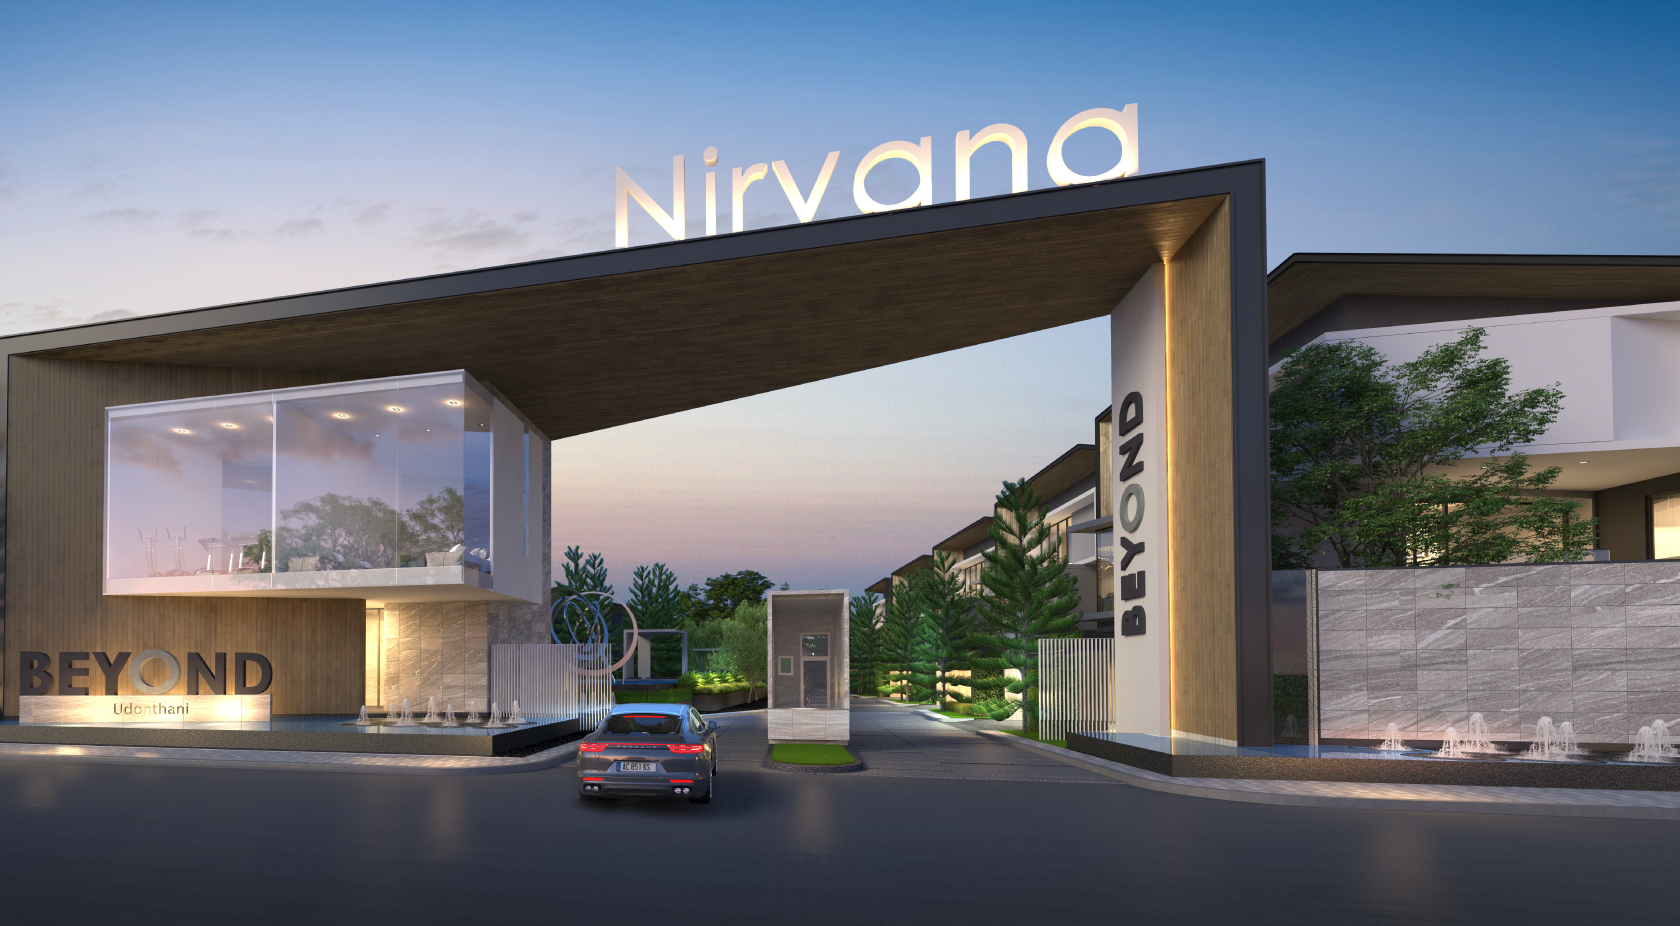 เนอวานา บียอนด์ อุดรธานี (Nirvana BEYOND UdonThani) : ภาพที่ 1